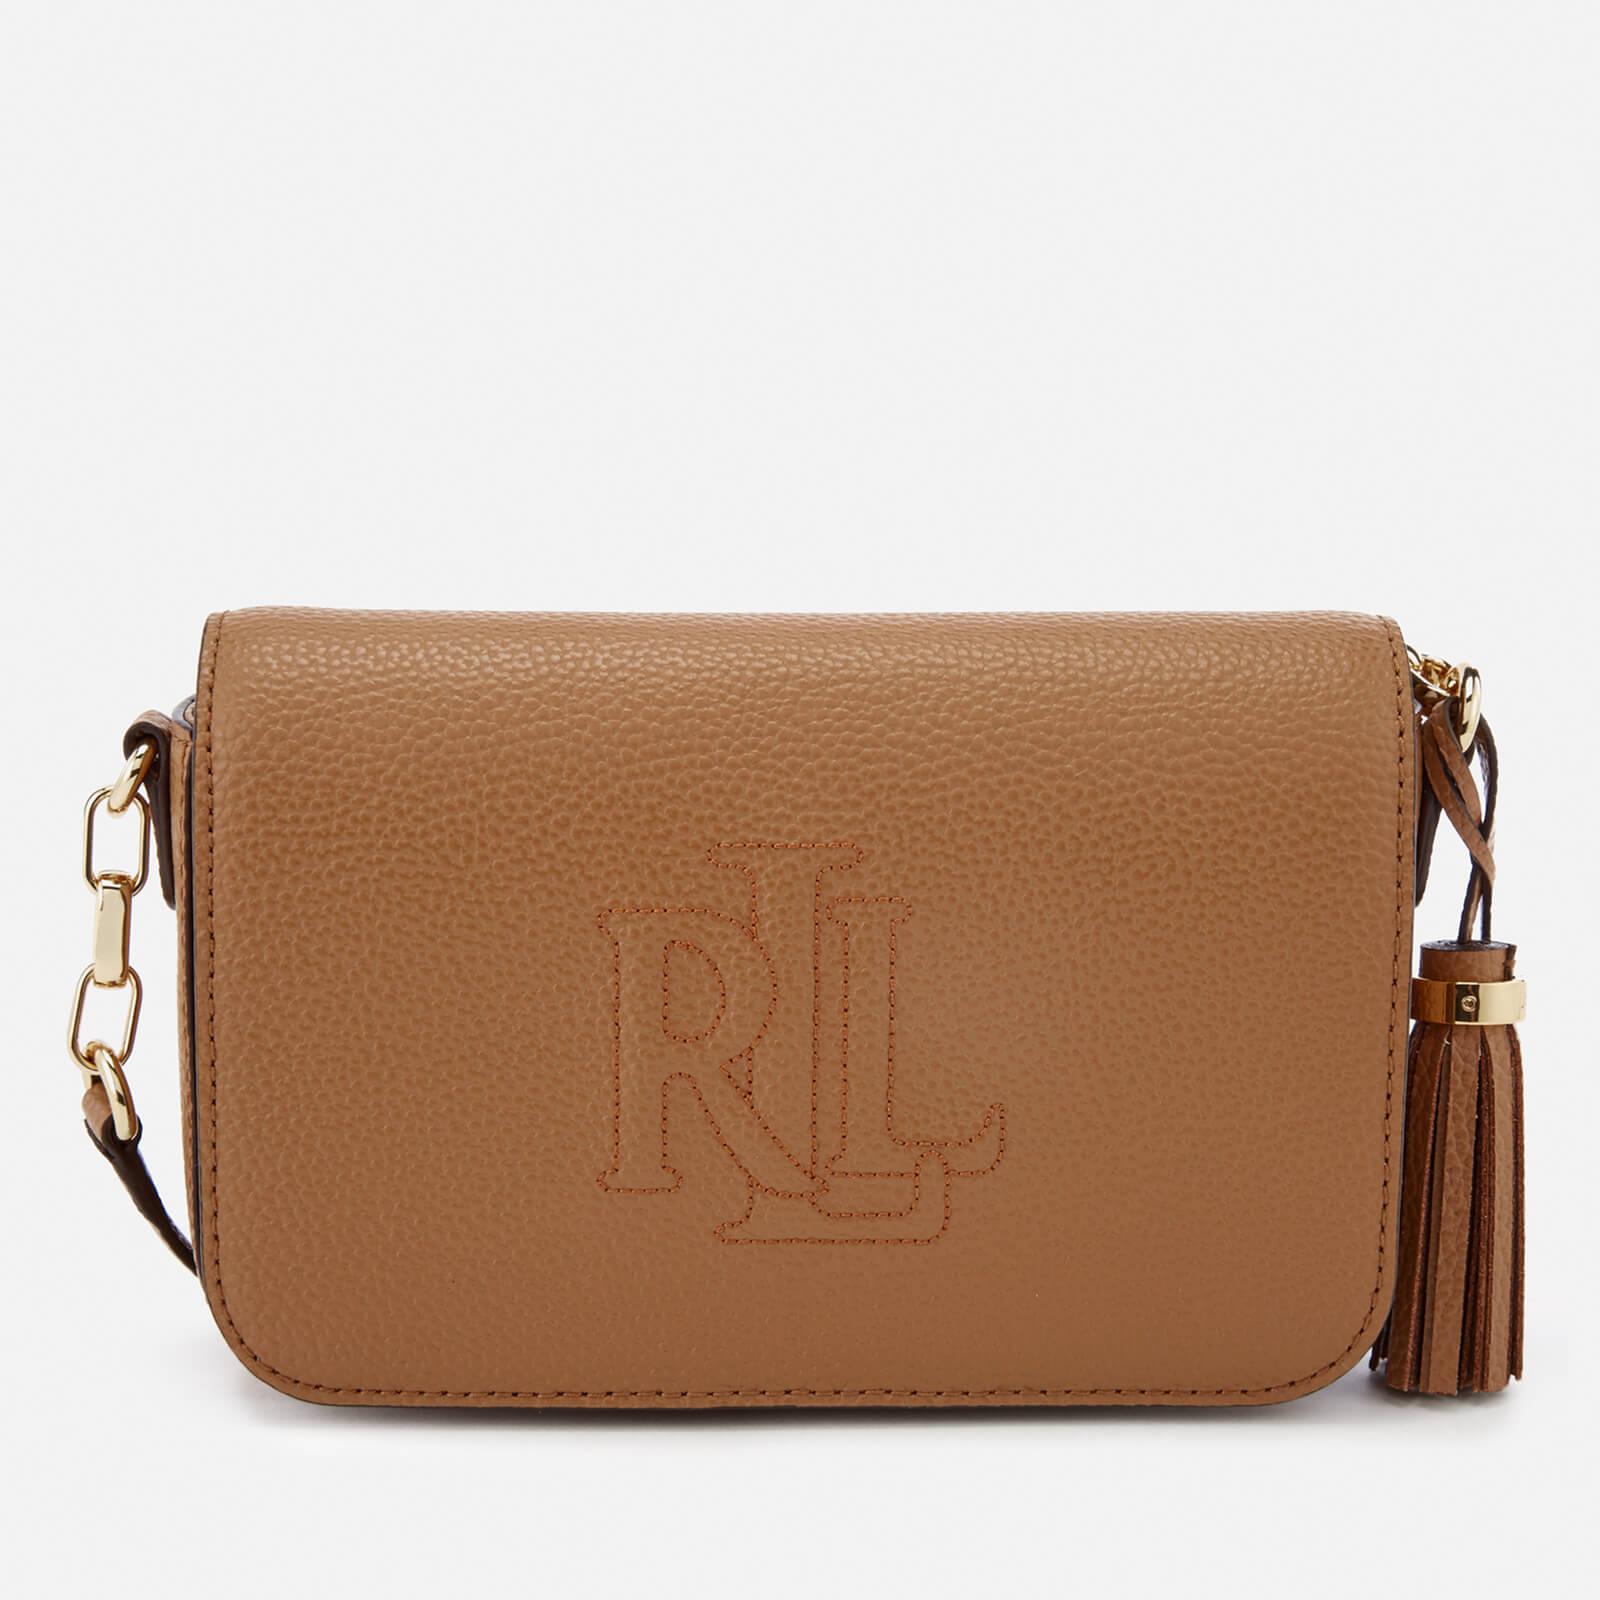 Lauren by Ralph Lauren Leather Anstey Carmen Cross Body Bag in Brown |